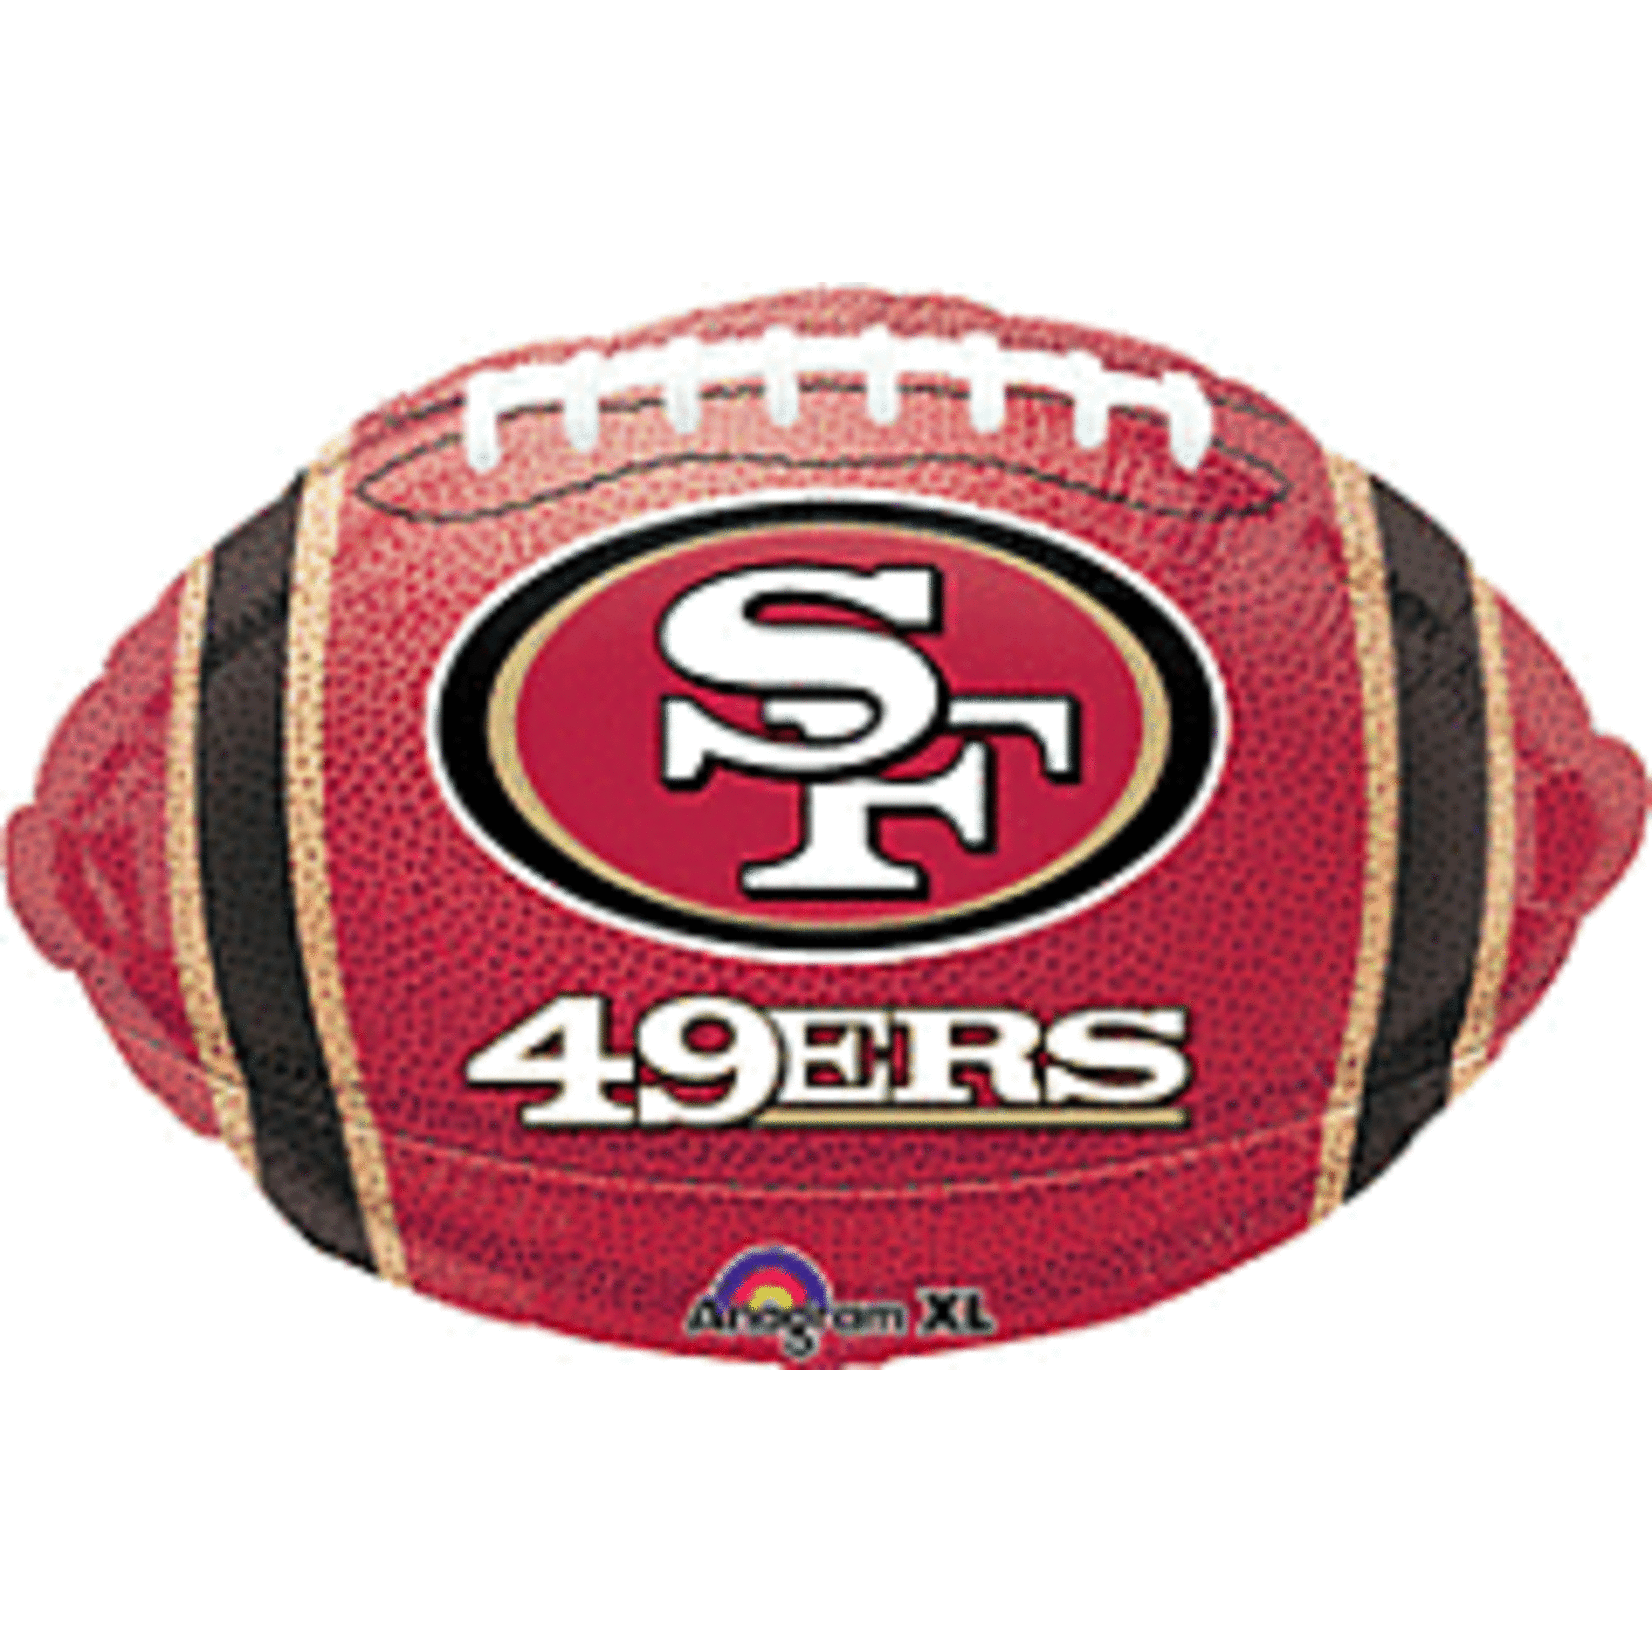 Anagram 18" SF 49ers Balloon